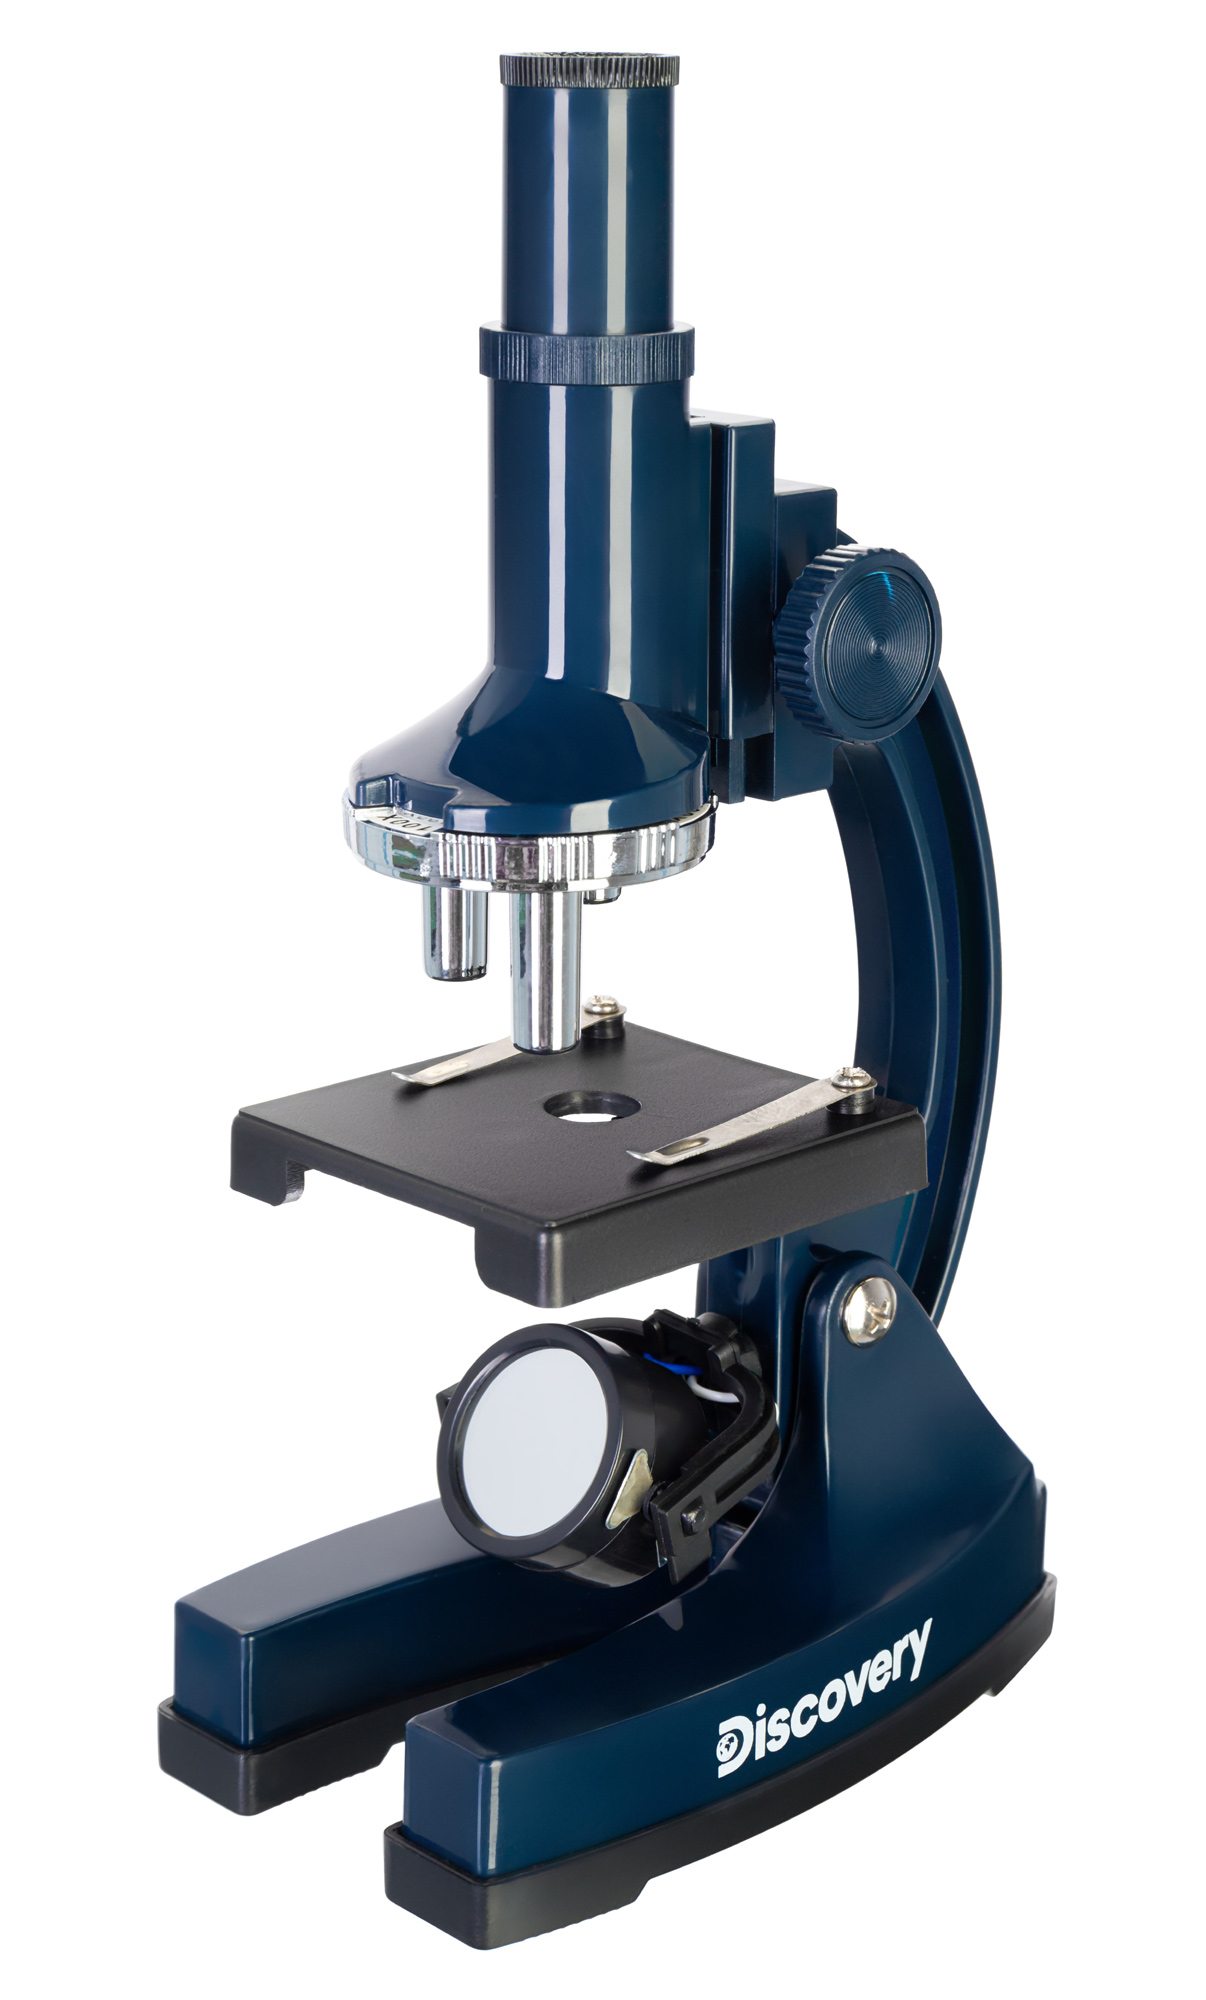 Микроскоп Levenhuk Discovery Centi 02 с книгой 78241 discovery микроскоп centi 02 с книгой